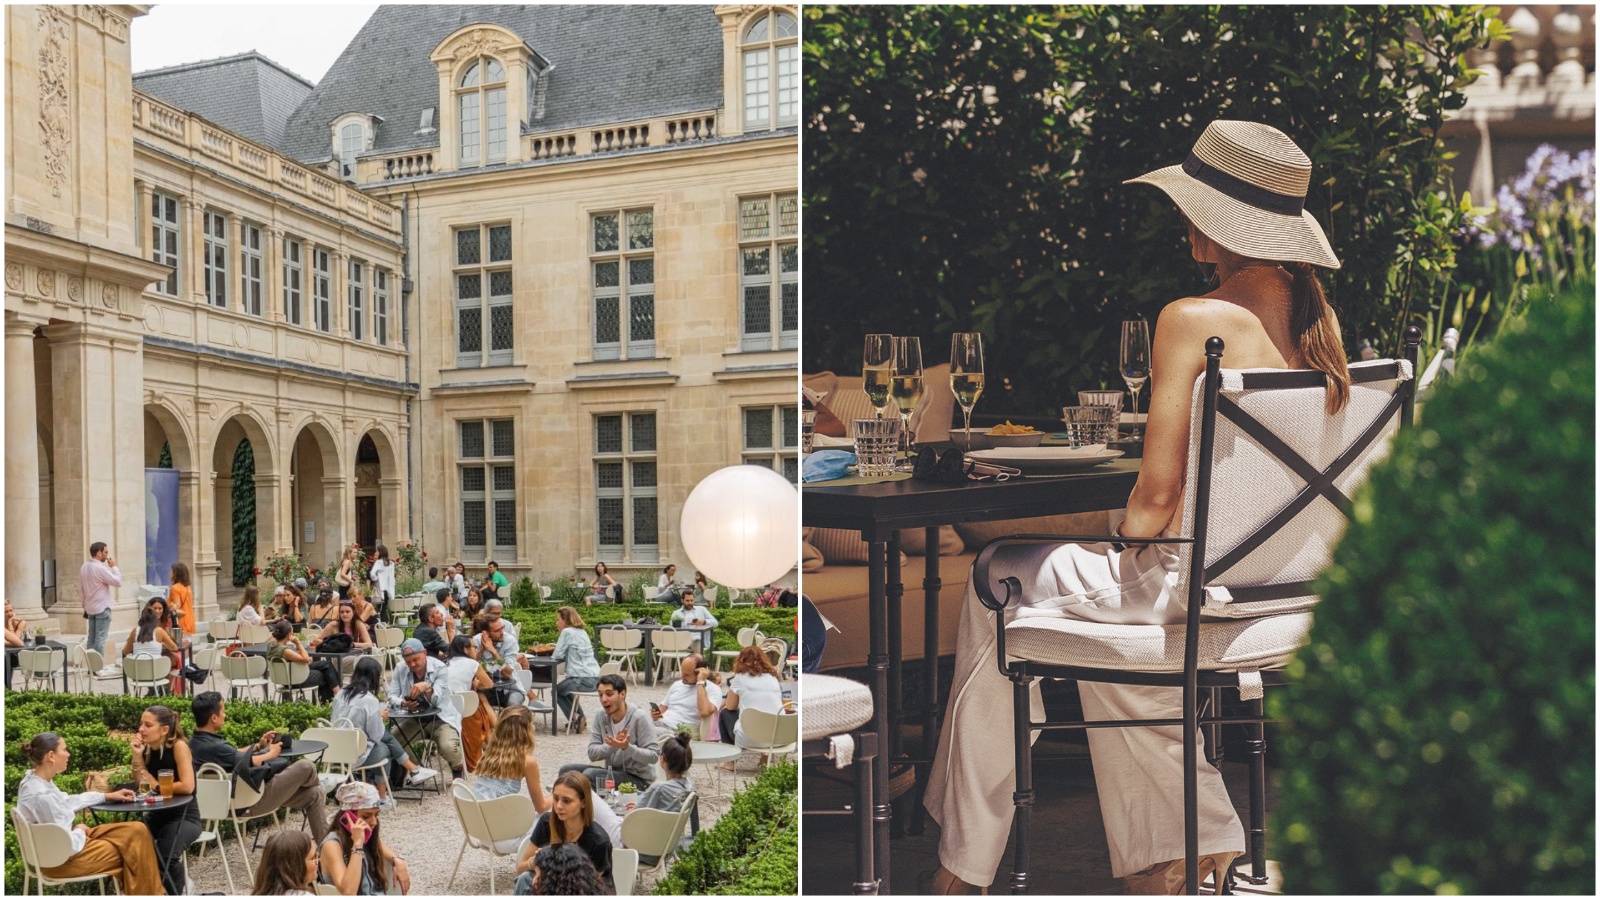 Četiri skrivene terase u Parizu na kojima želimo provesti sunčano popodne